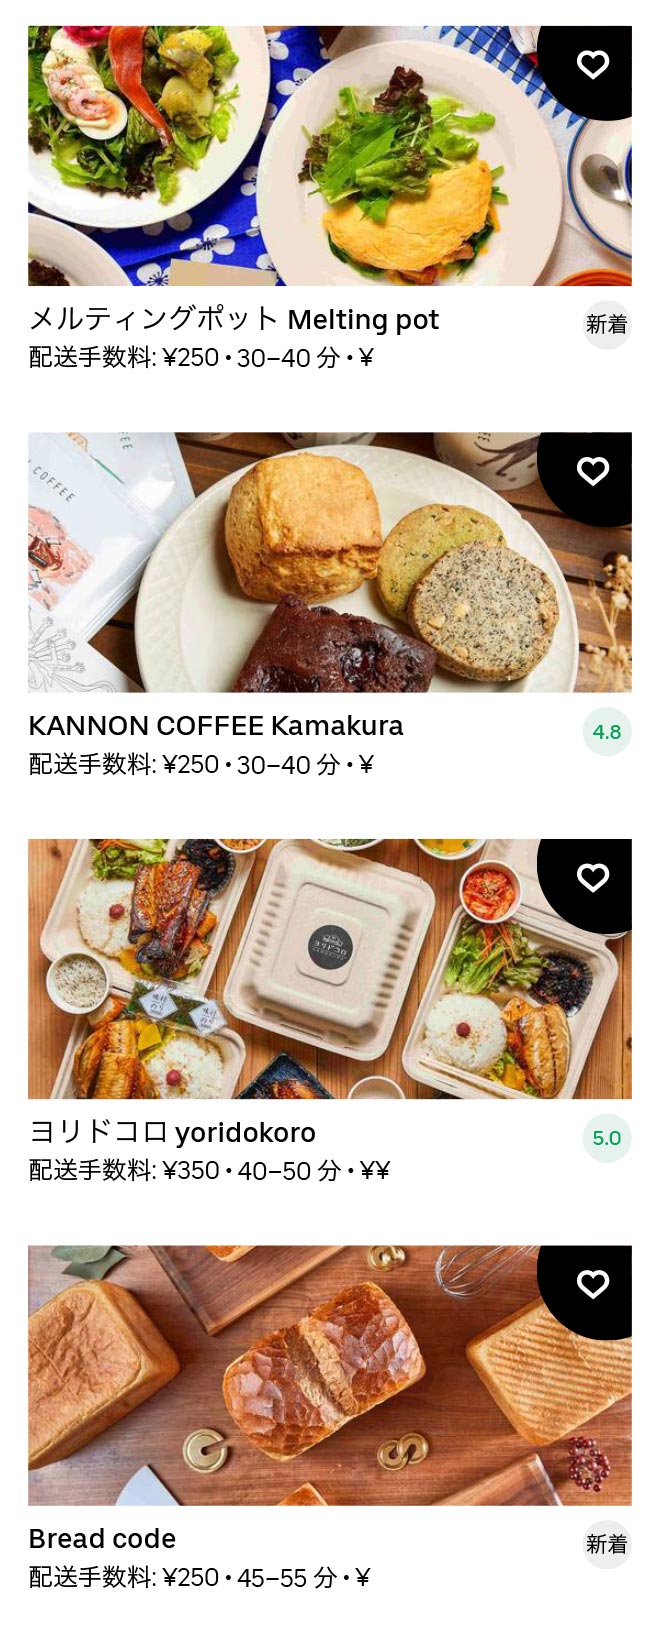 Kamakura menu 2012 10